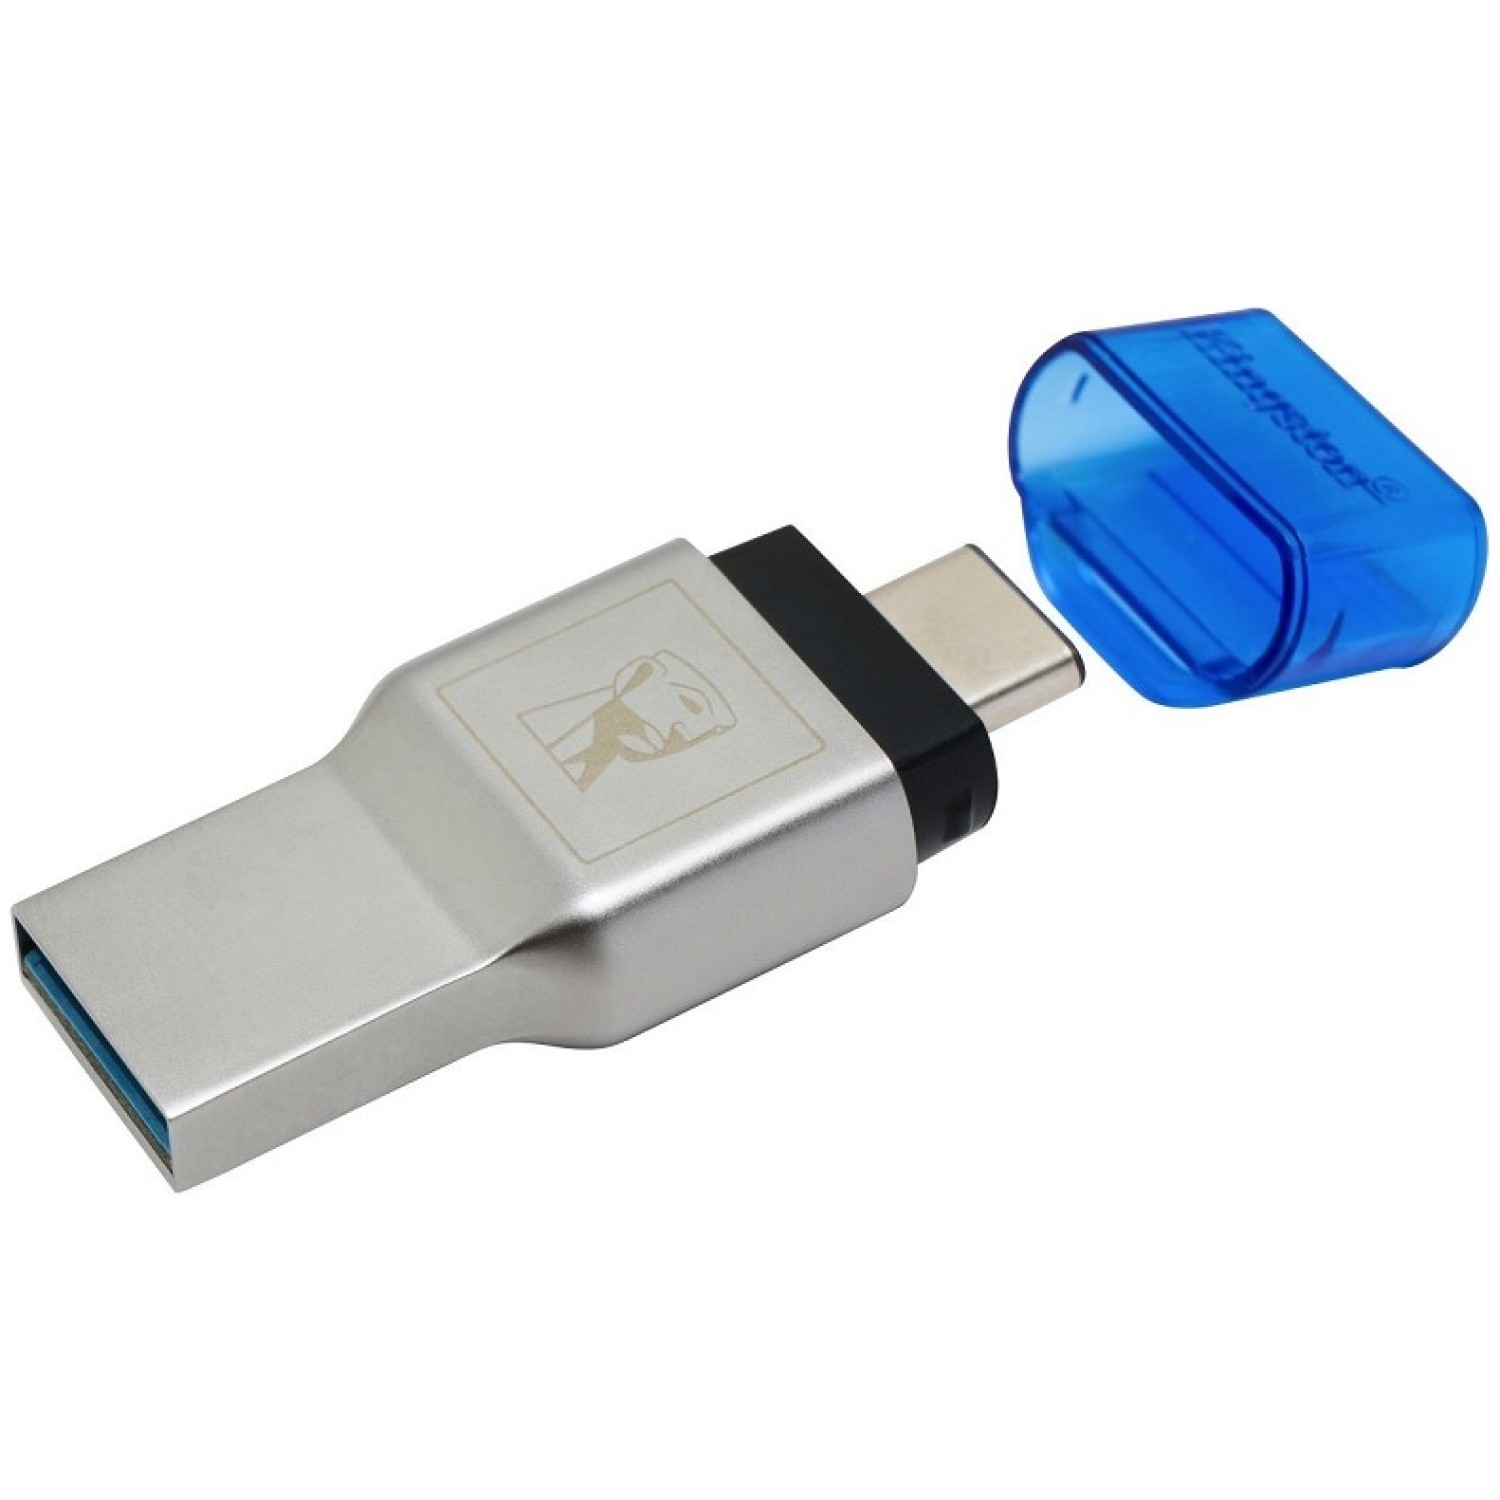 KINGSTON FCR-ML3C USB 3.1 MobileLite Duo 3C MicroSD SDHC SDXC Type-C prenosni čitalec kartic